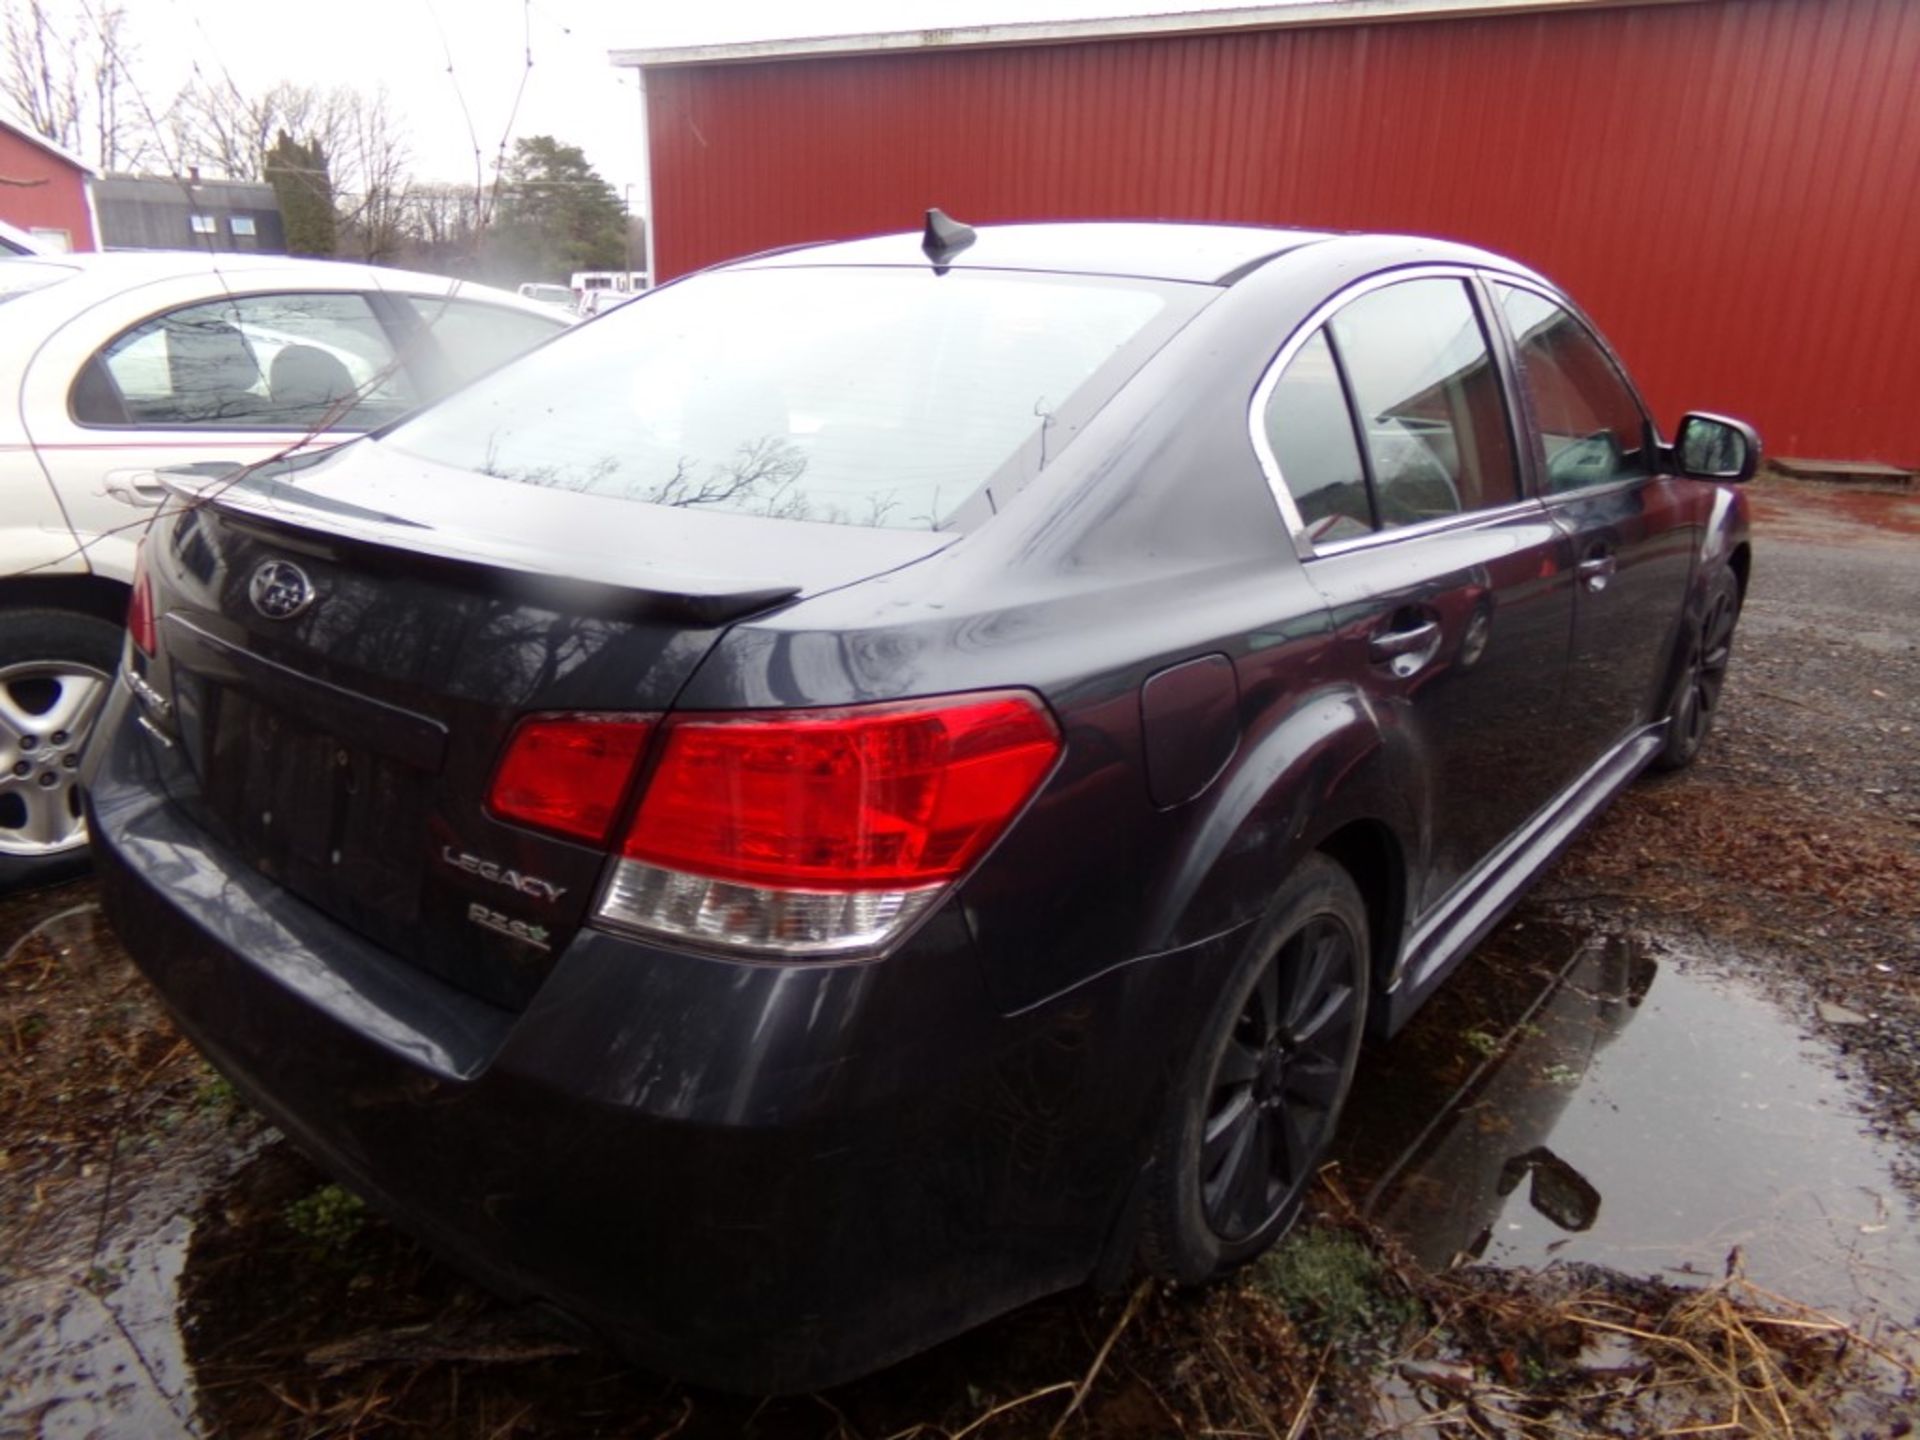 2011 Subaru Legacy, AWD, Heated Leather Seats, Sunroof, Navigation, Dark Blue, 172,928 Miles, - Bild 3 aus 11